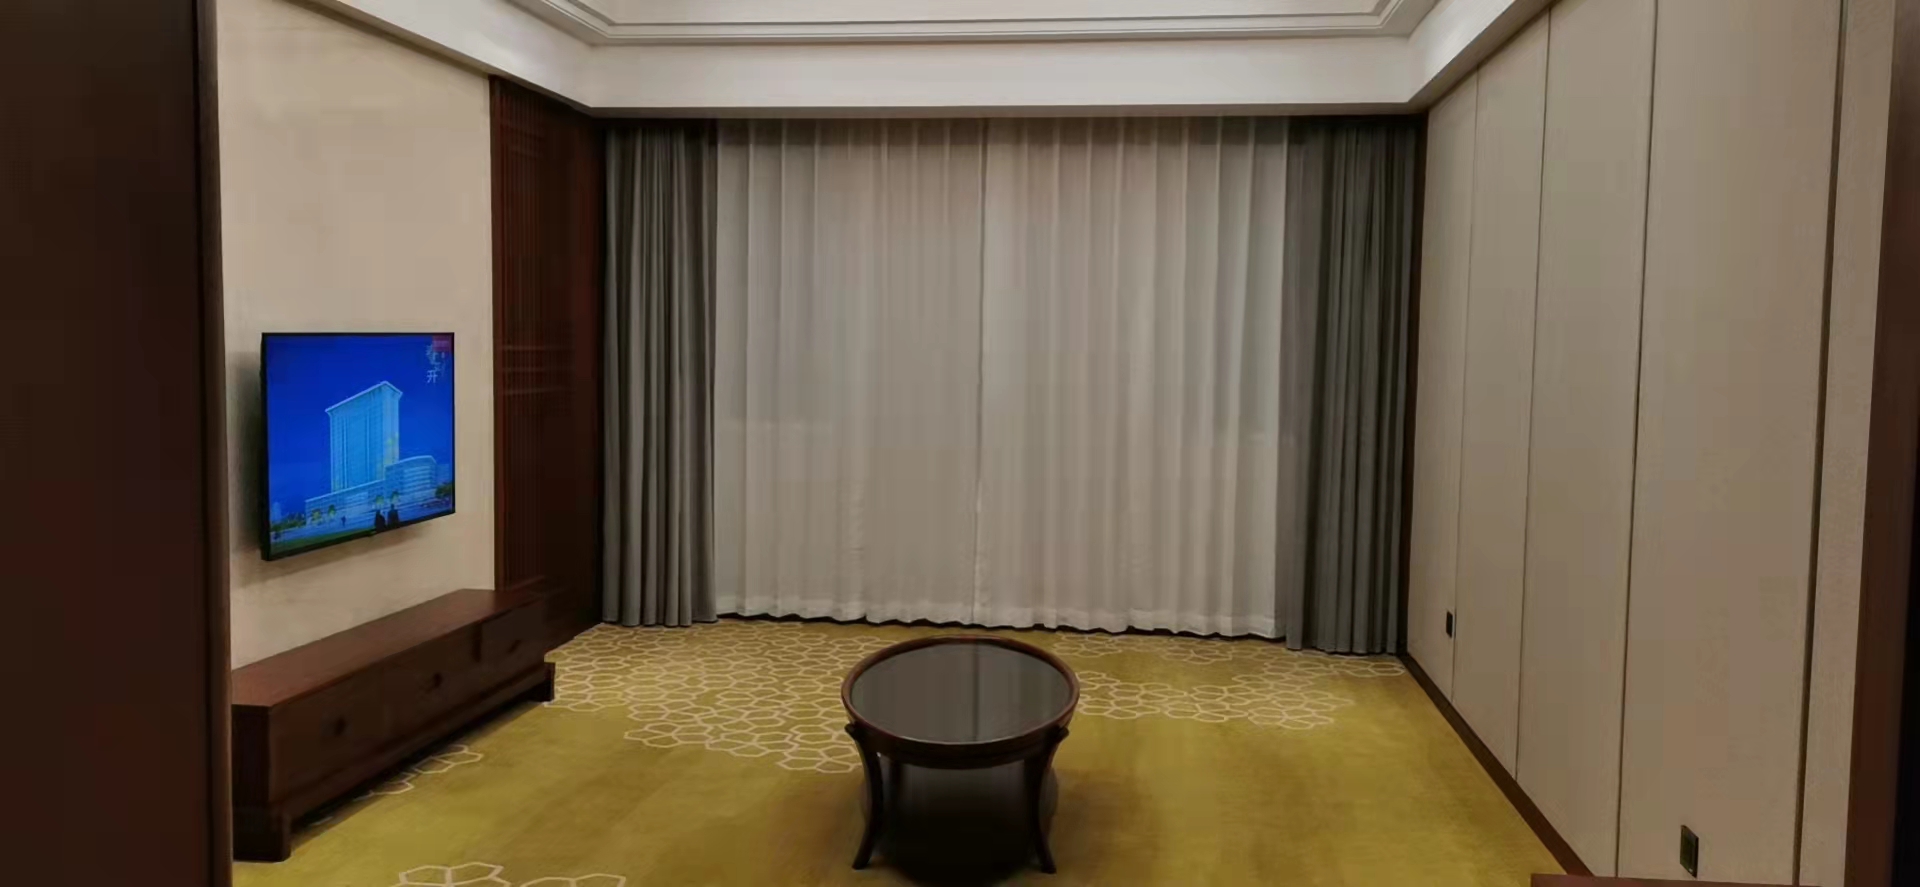 西安酒店窗帘